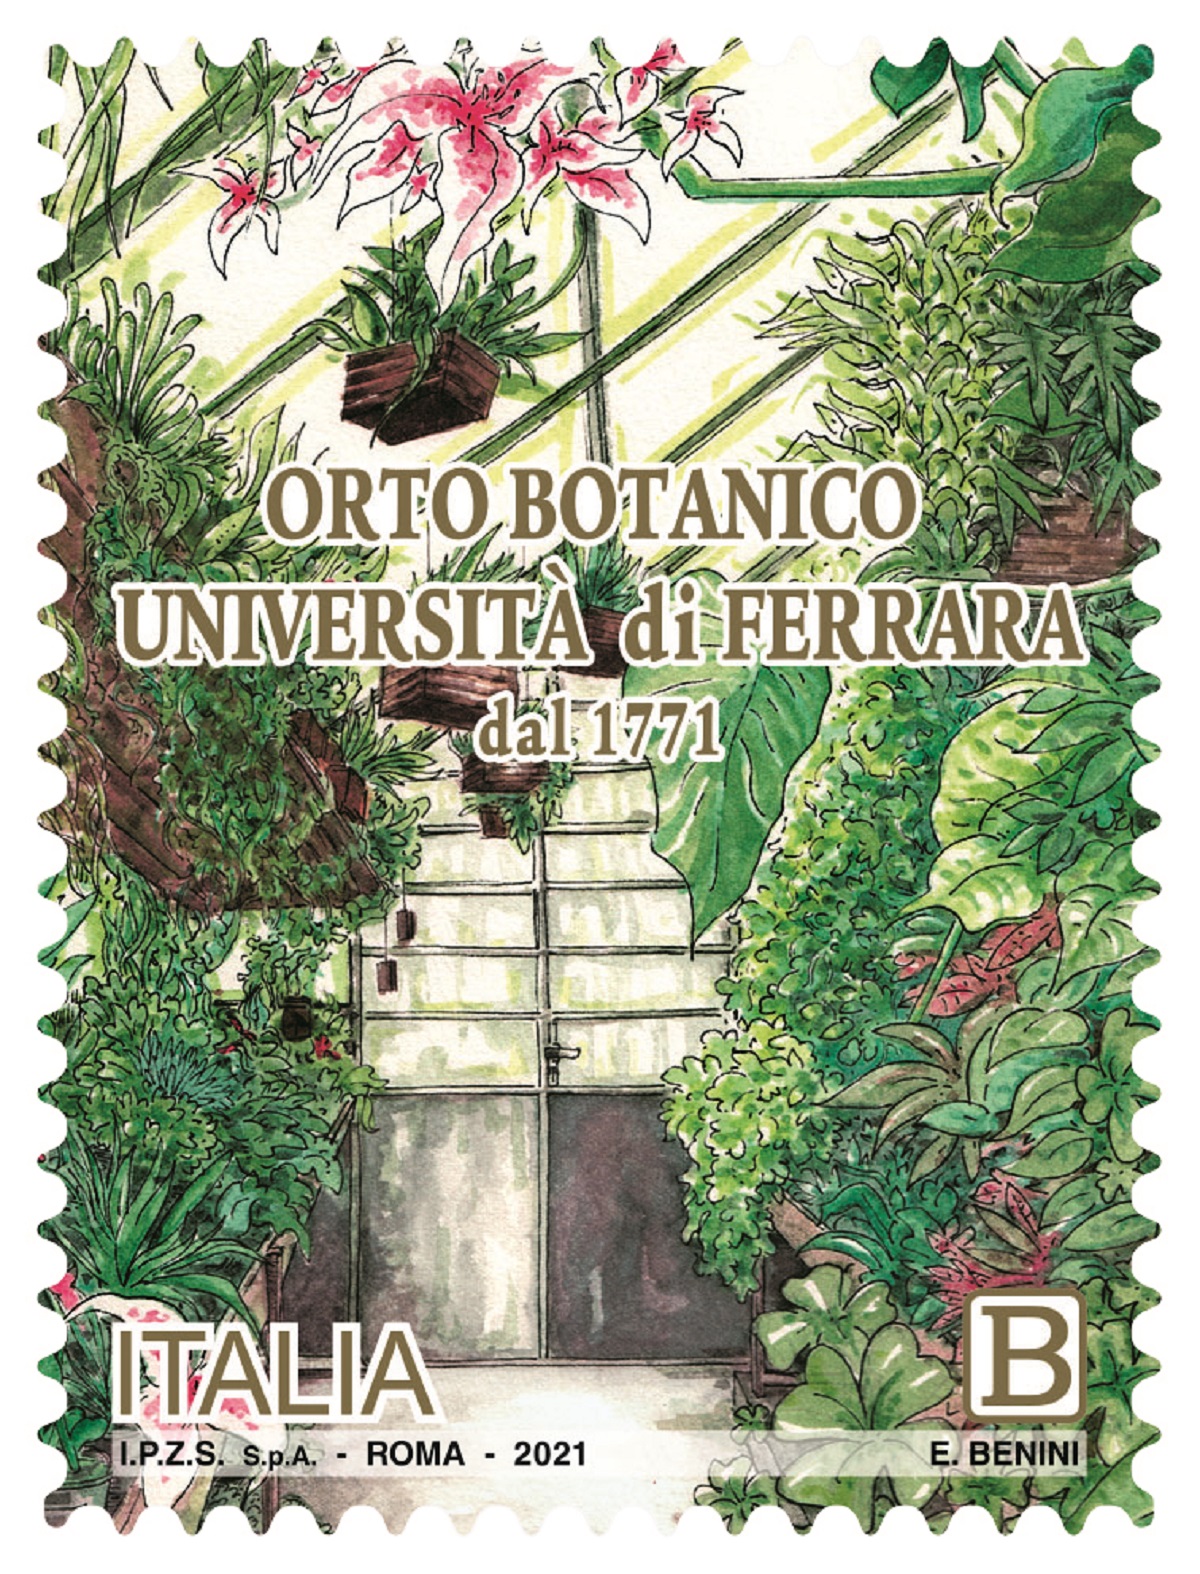 Poste Italiane, francobollo dedicato all'Orto Botanico dell'Università di Ferrara